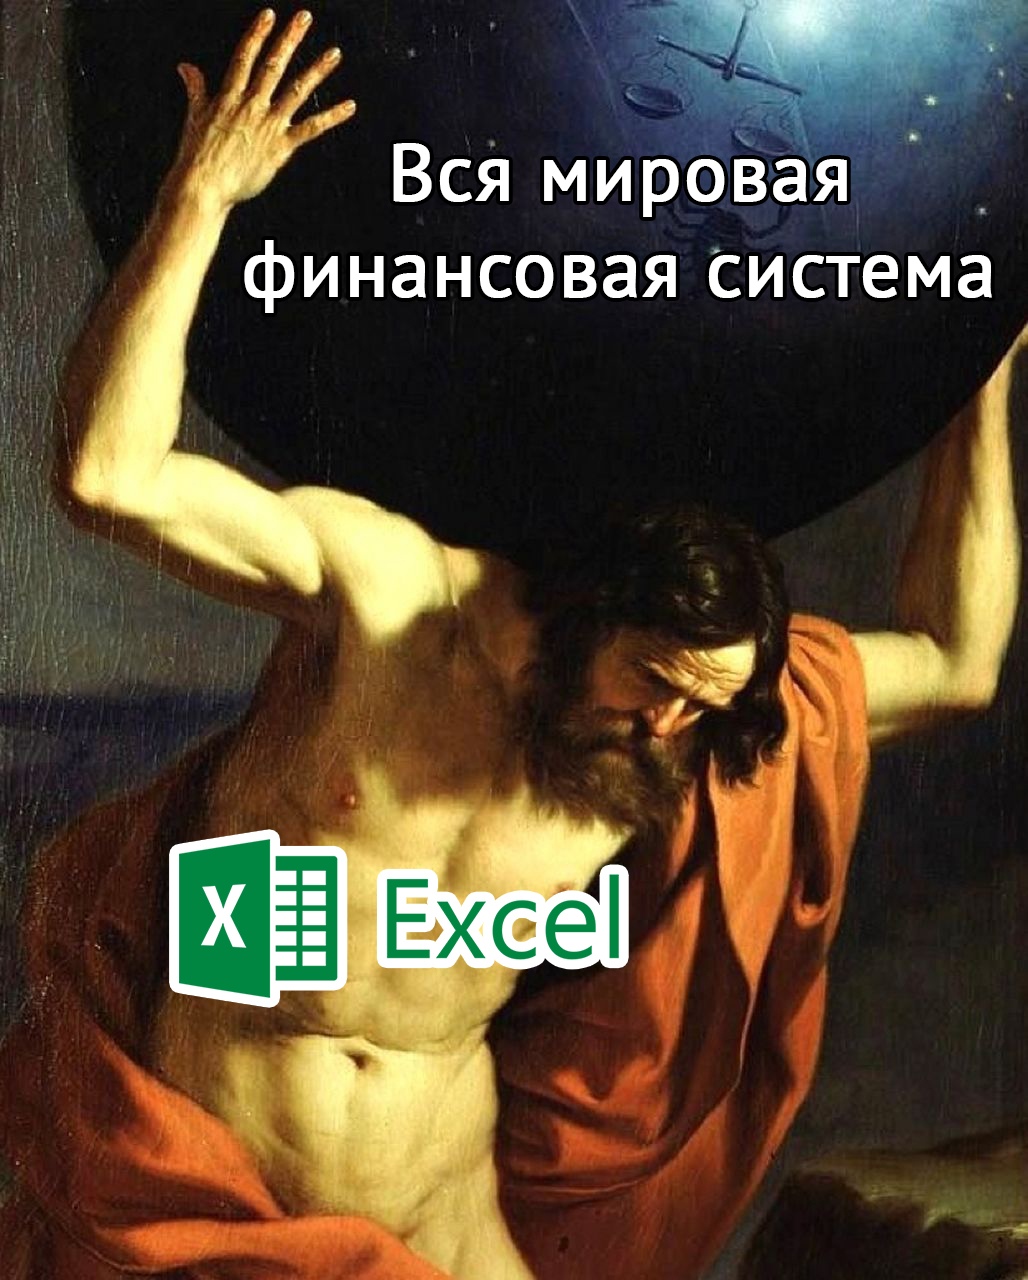 Мем про Excel и мировую финансовую систему 